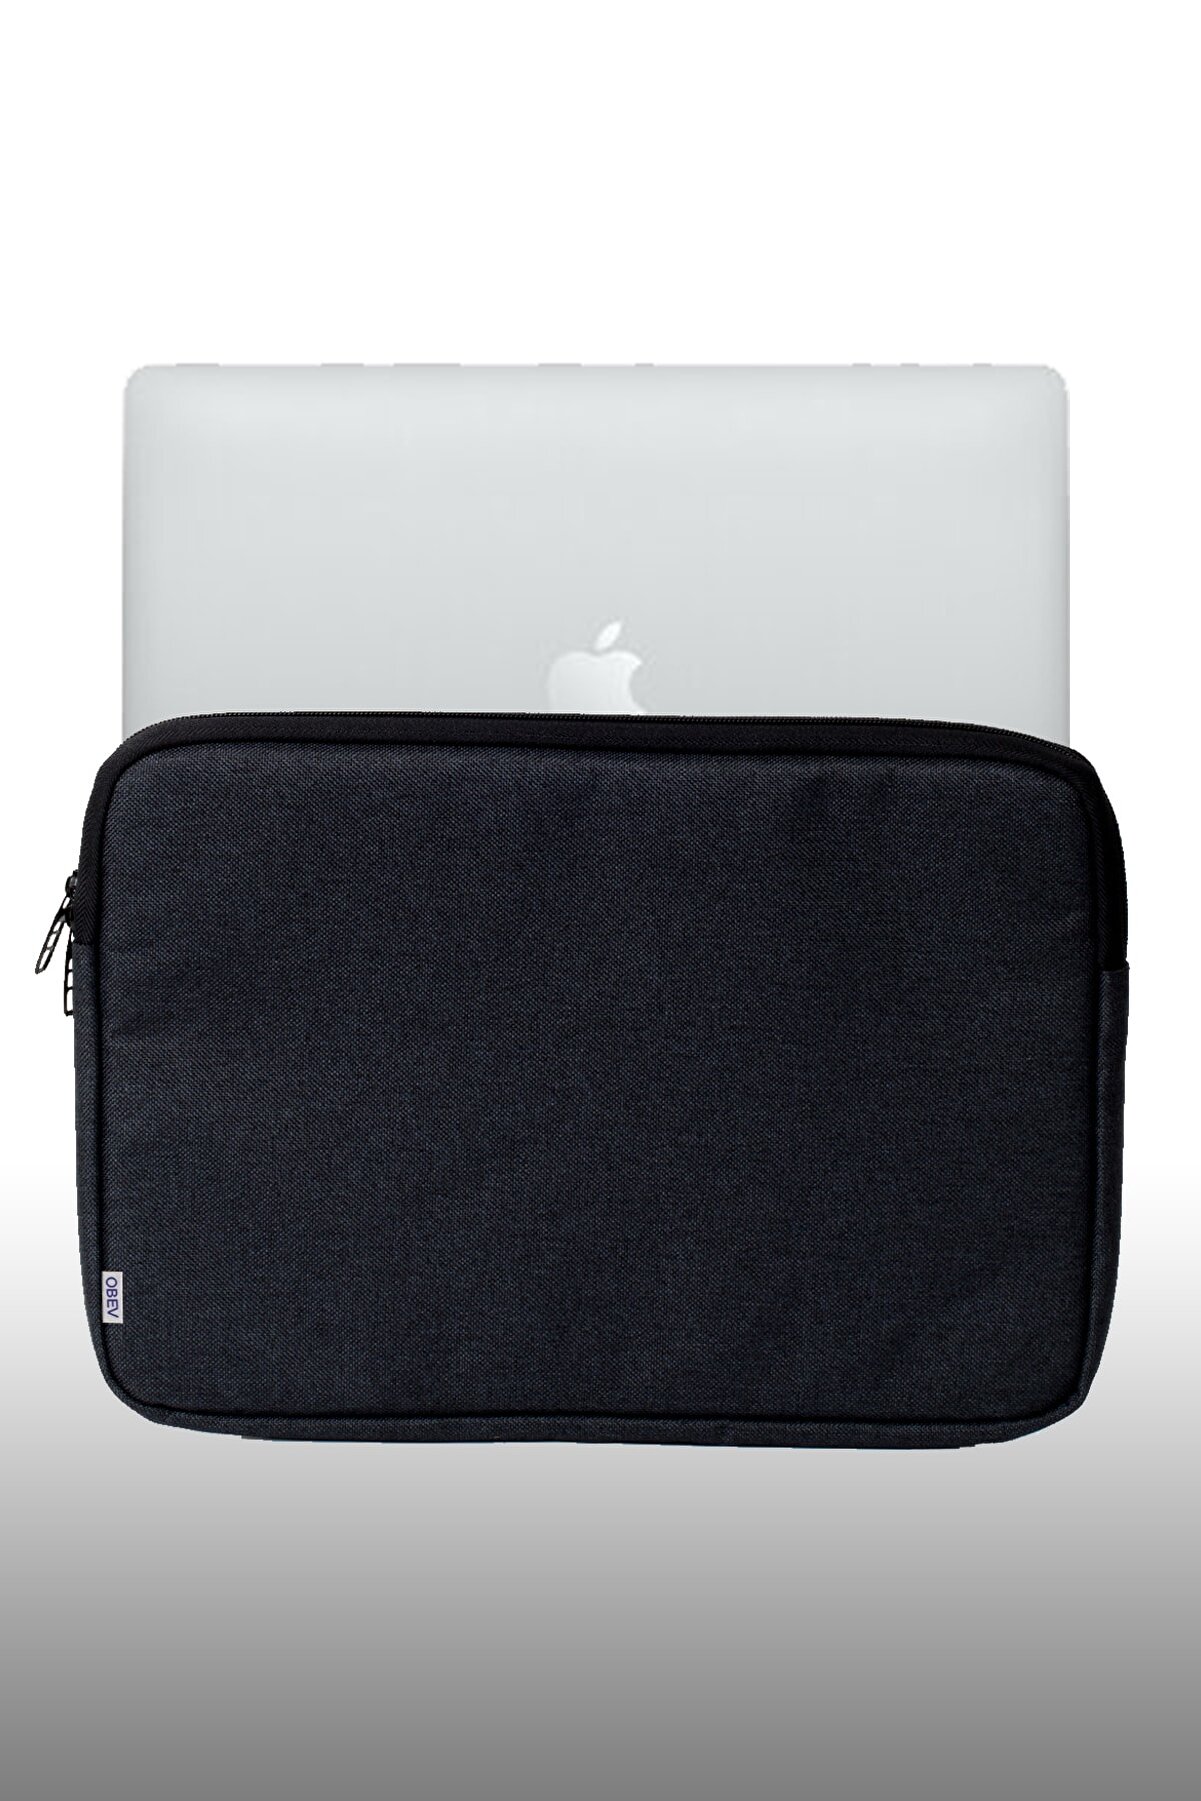 ROBEVE Macbook Çanta Kılıf Unisex Su Geçirmez 13 - 13.3 - 14 Inç Uyumlu Notebook Çantası Laptop Çantası